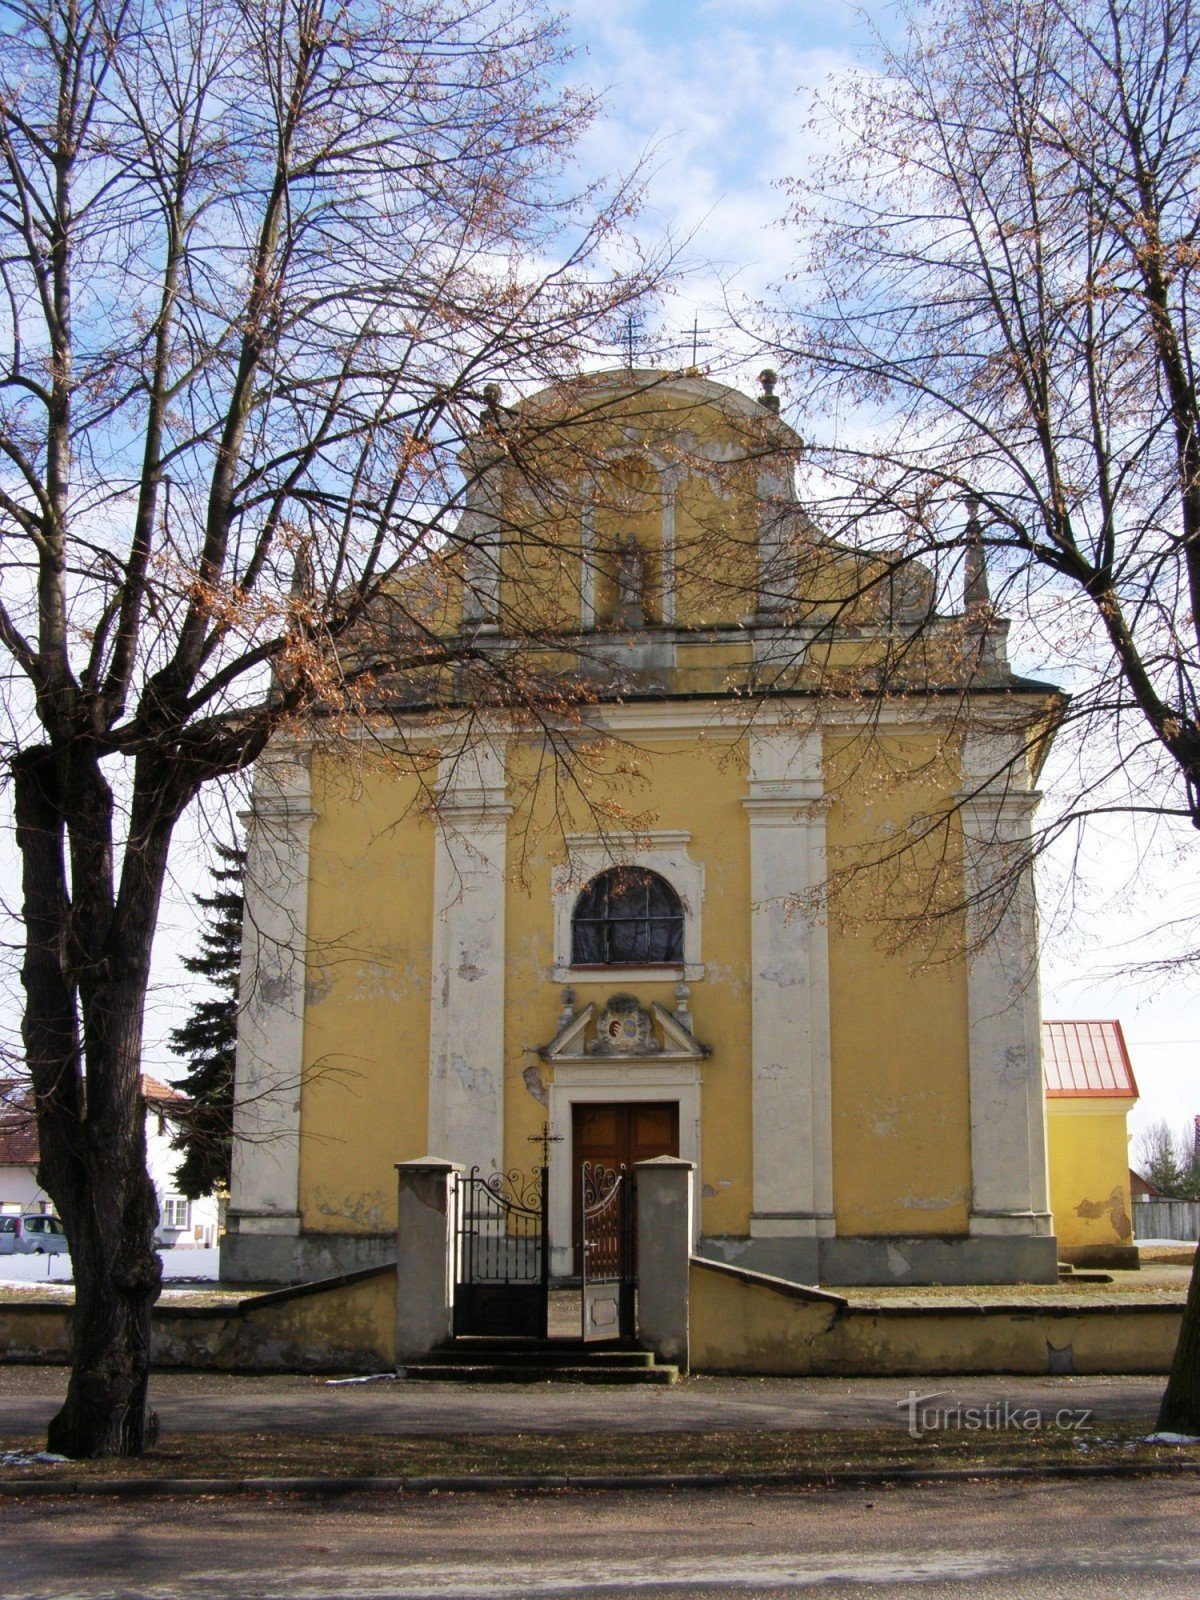 Lovčice - Kyrkan St. Bartolomeus med klockstapeln